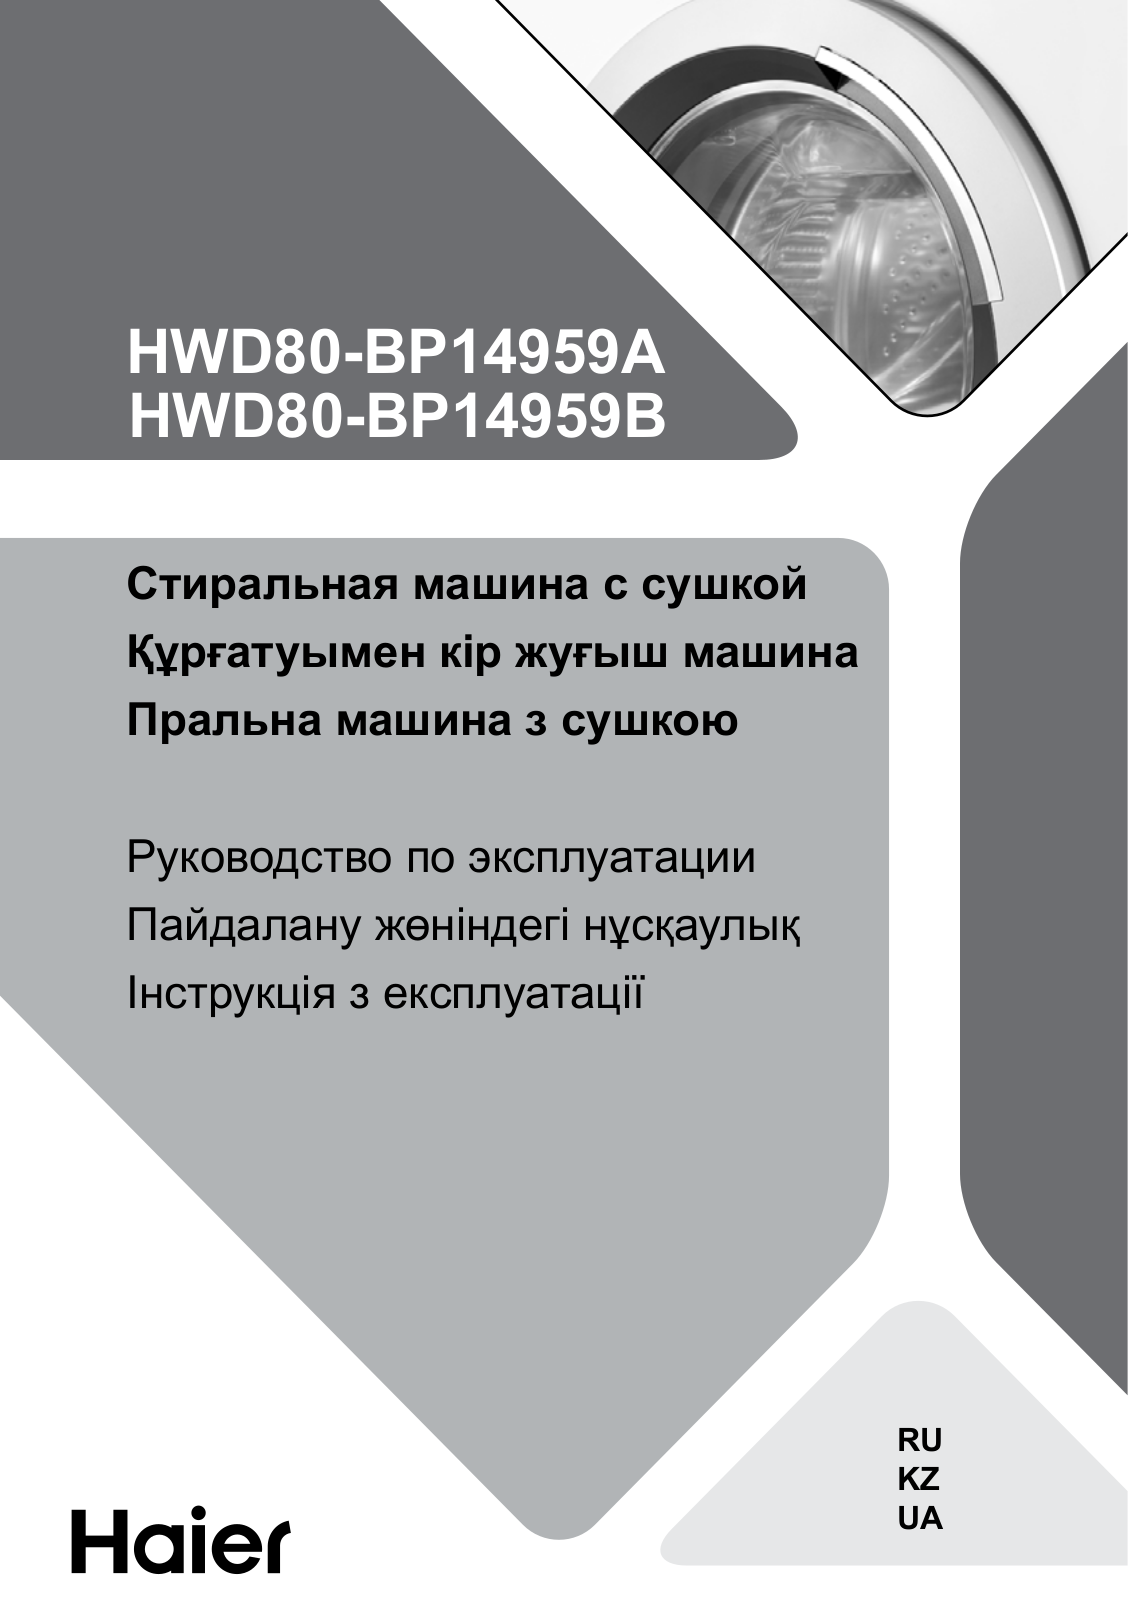 Haier HWD80-BP14959A User Manual